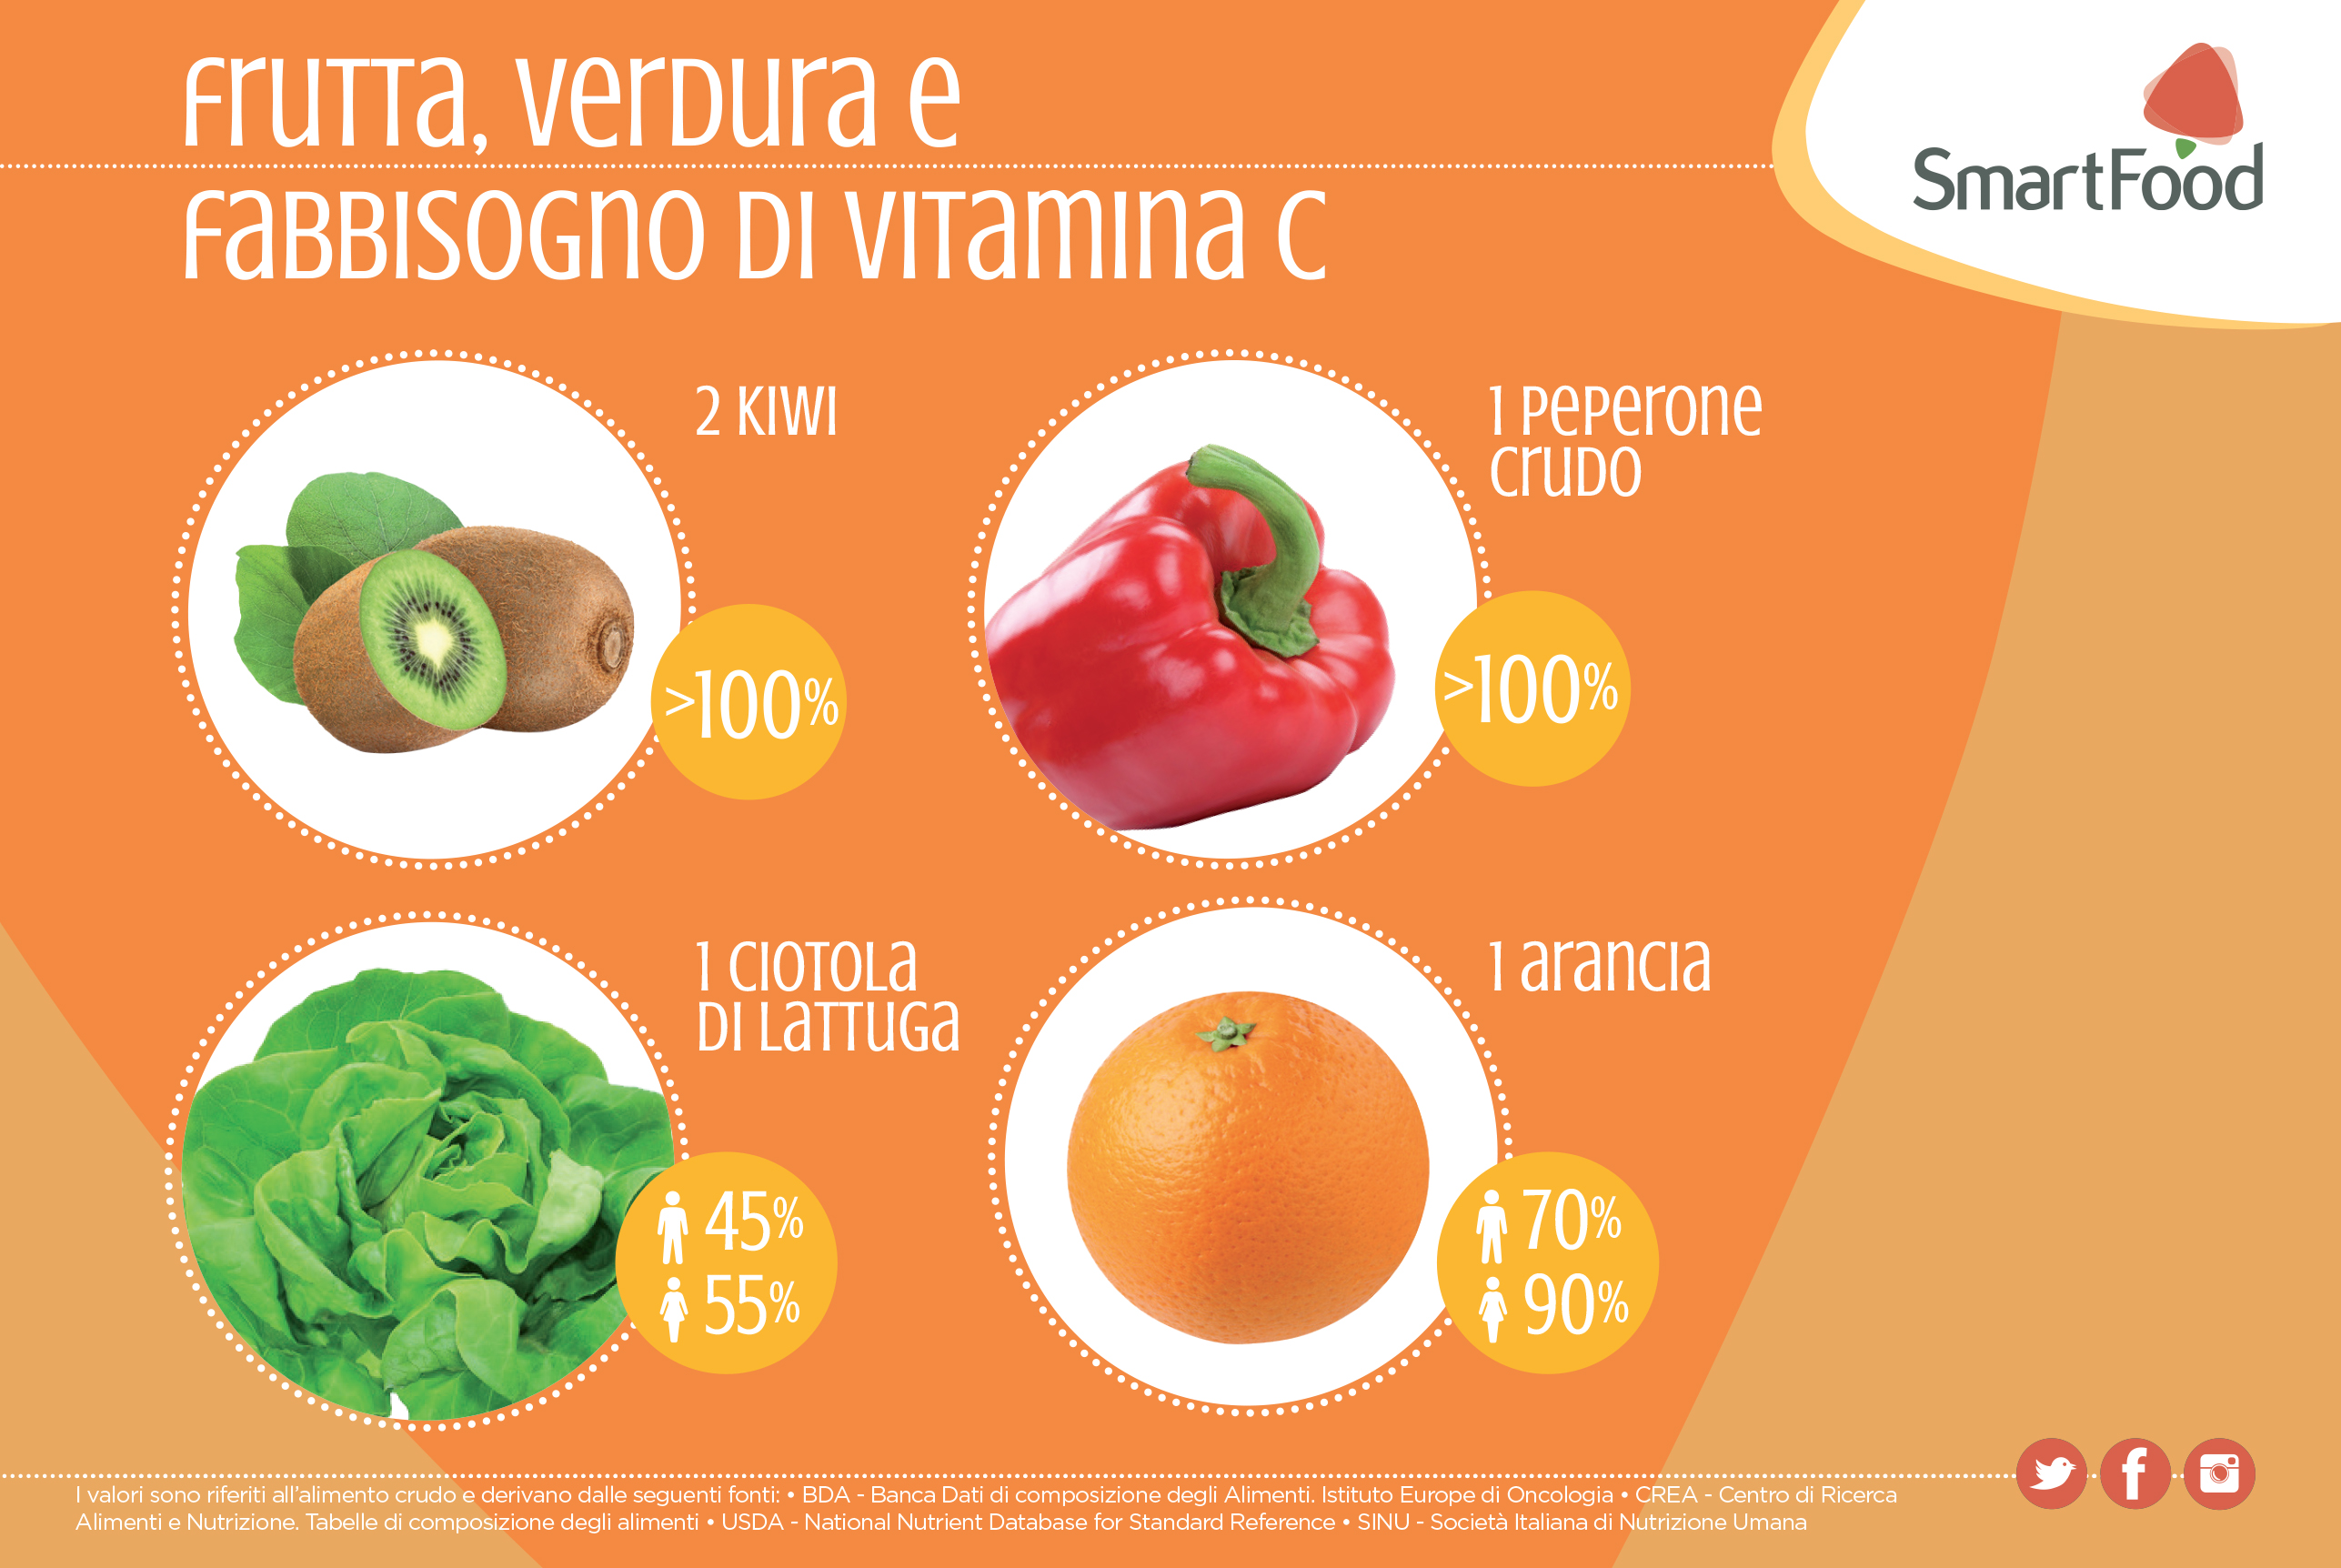 frutta verdura e fabbisogno di vitamina C